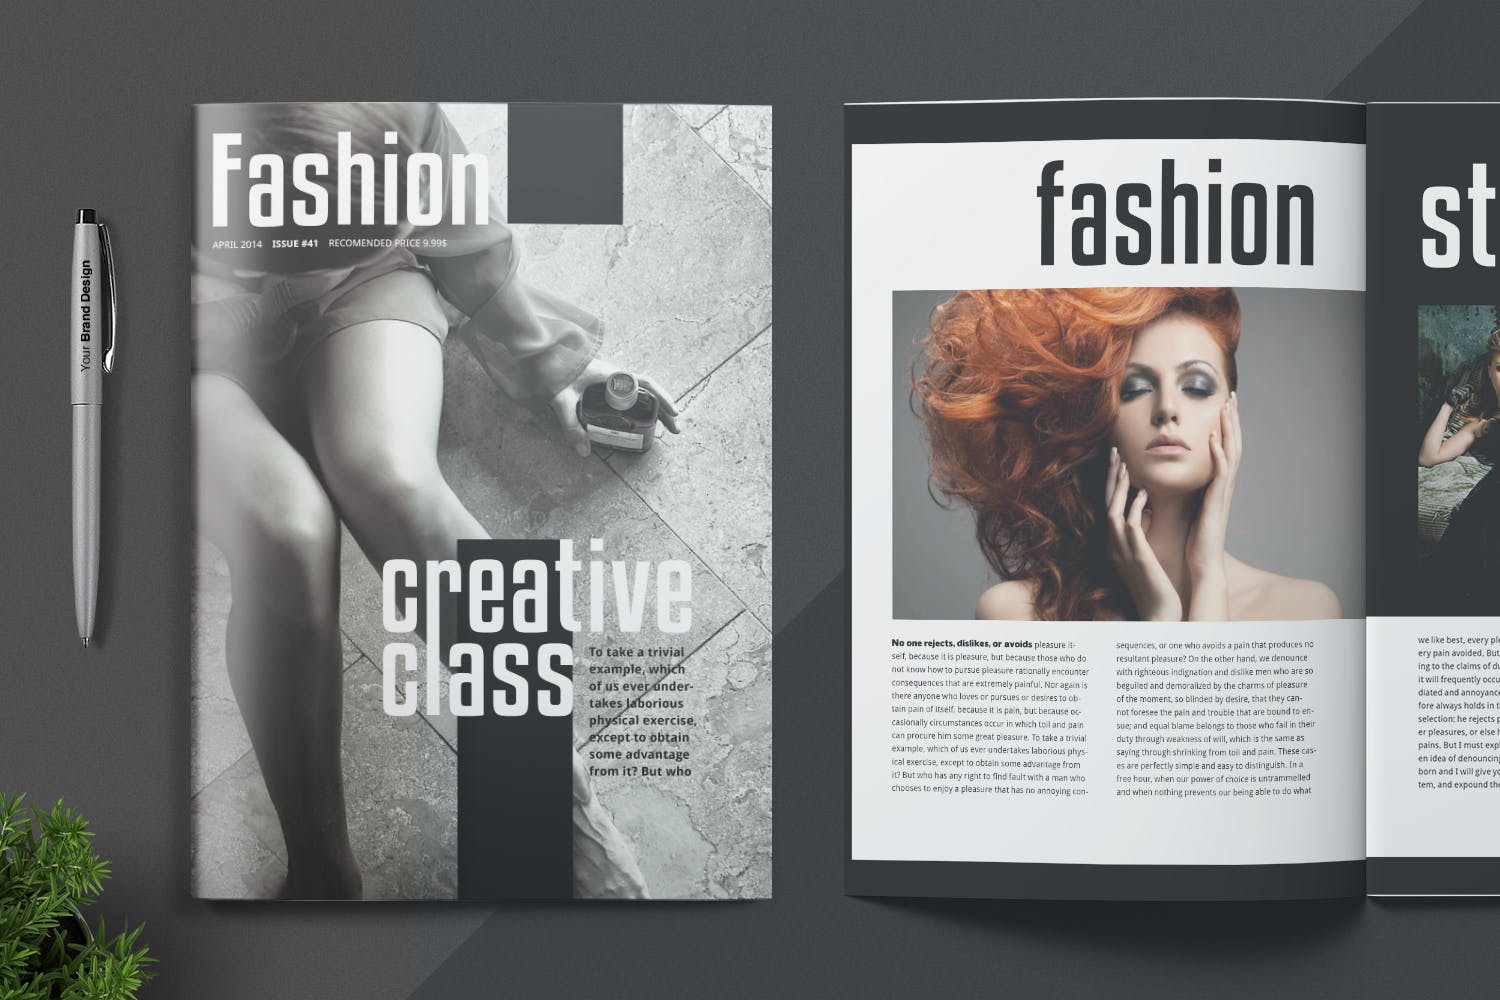 时尚/摄影/服装主题素材库精选杂志设计INDD模板 Magazine Template插图